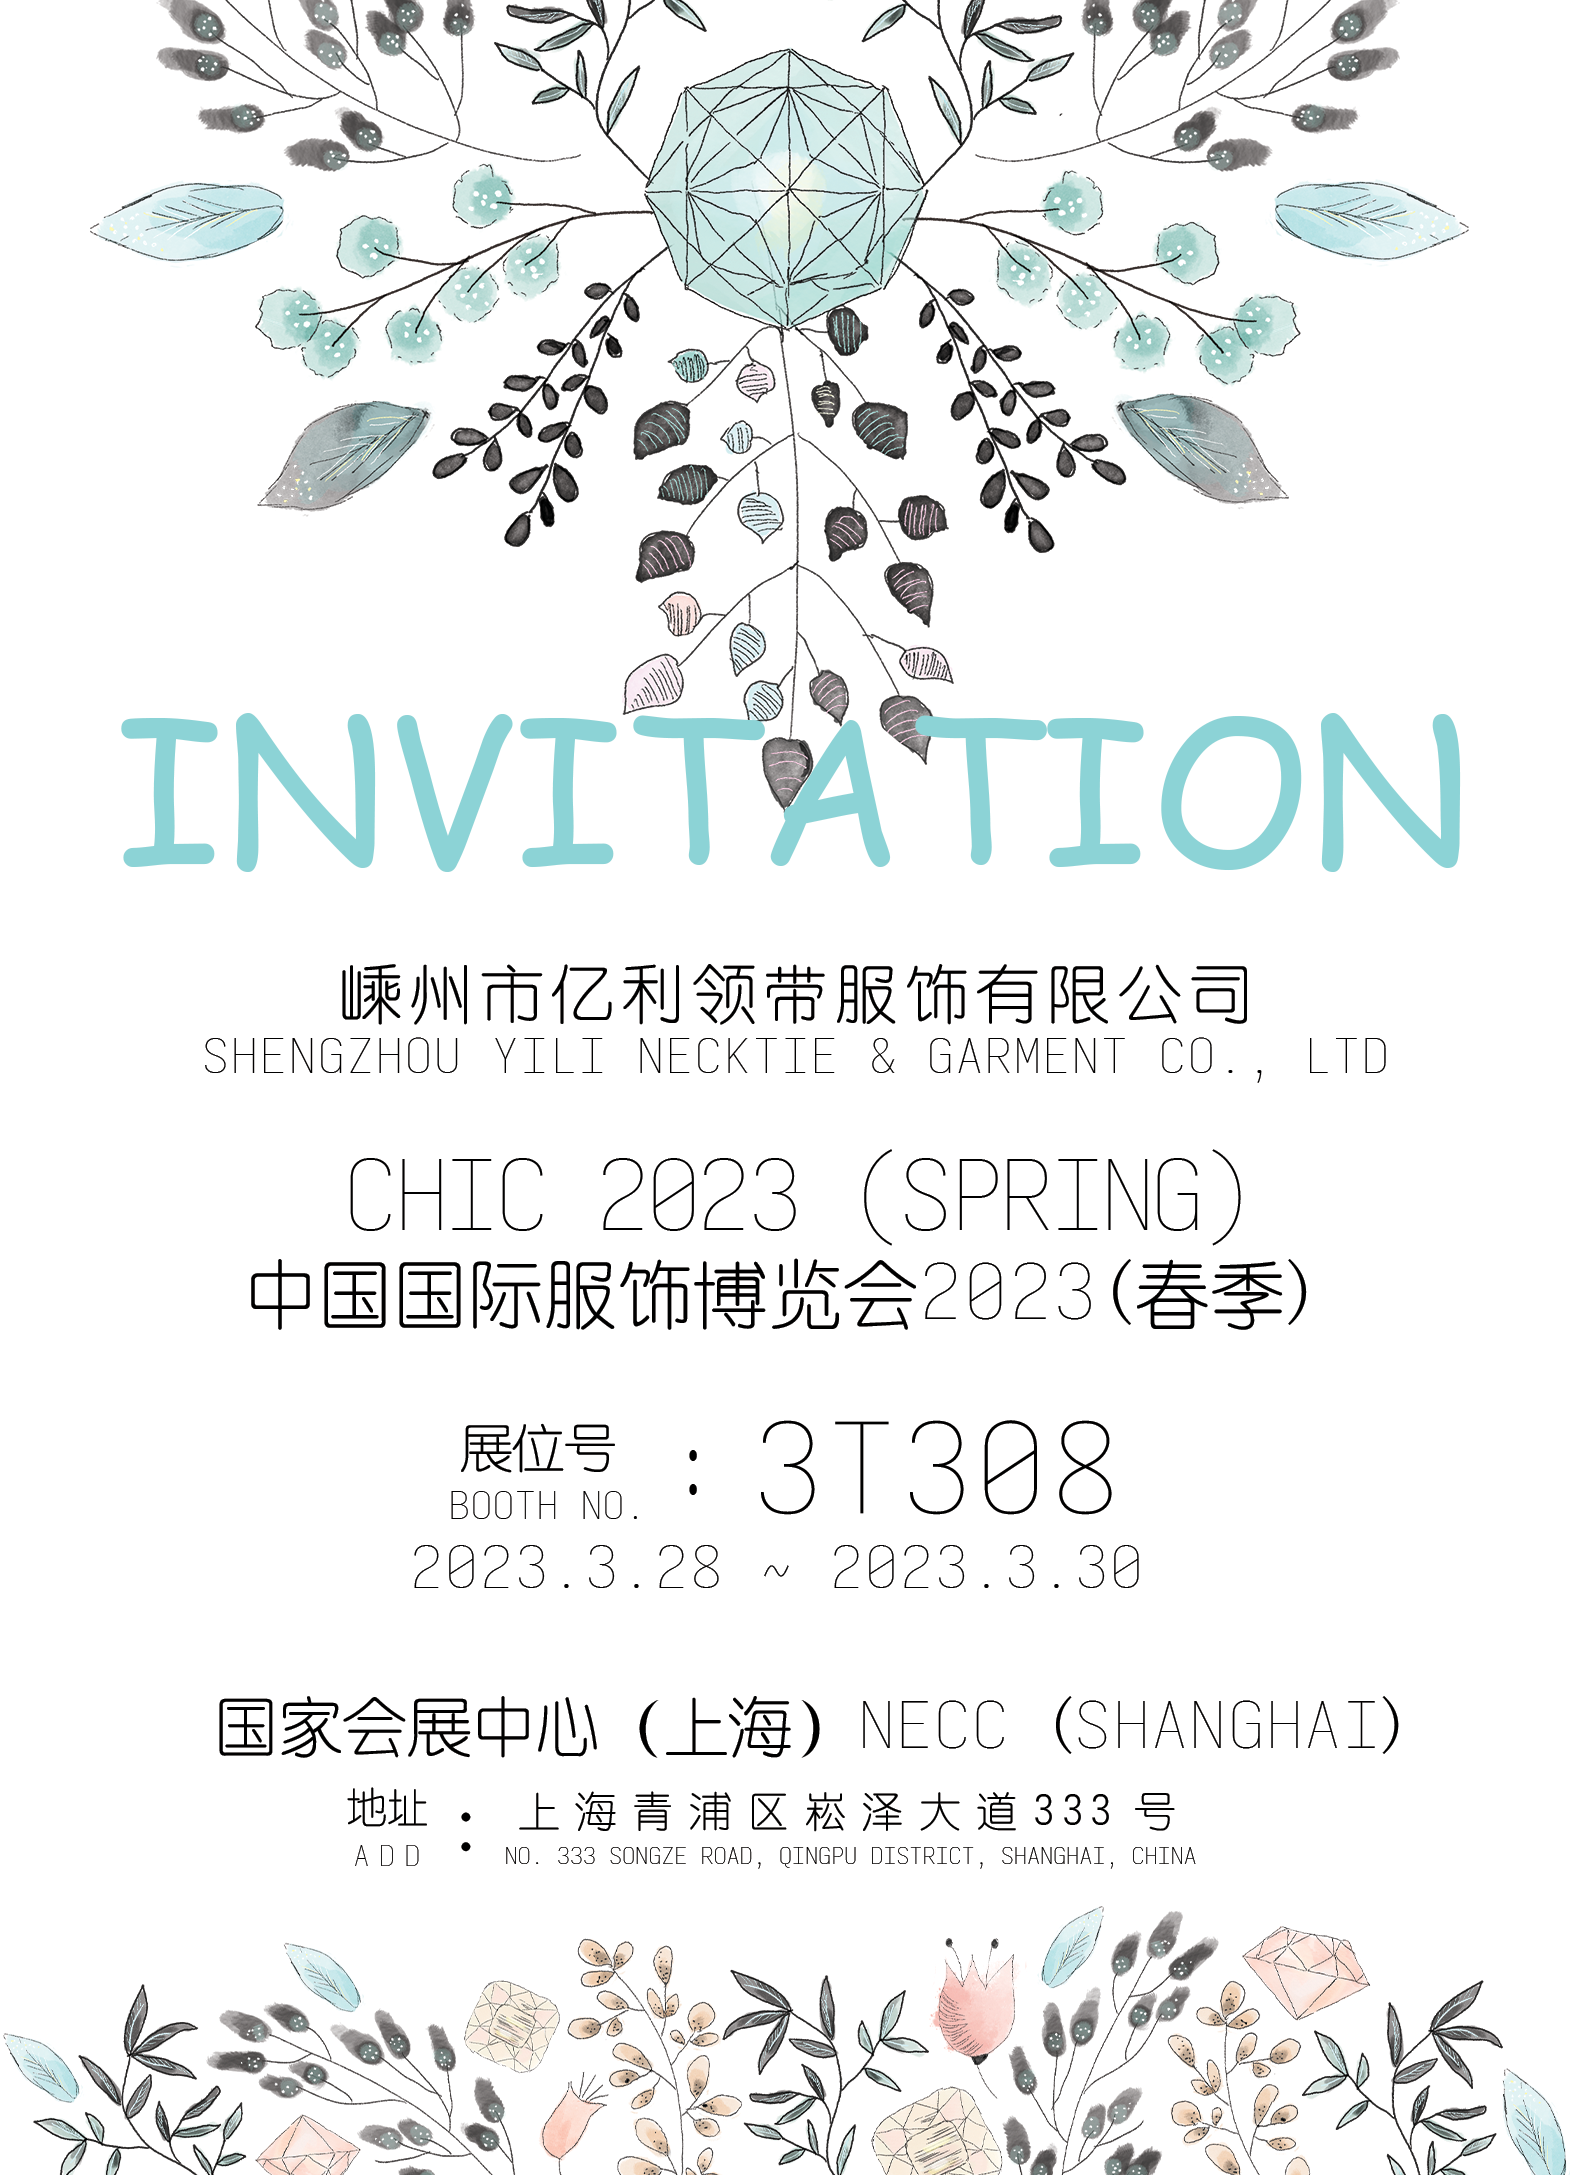 Tisztelettel meghívjuk Önt, hogy látogassa meg Kínai Nemzetközi Ruházat és Kiegészítők (CHCA) Vásár standját